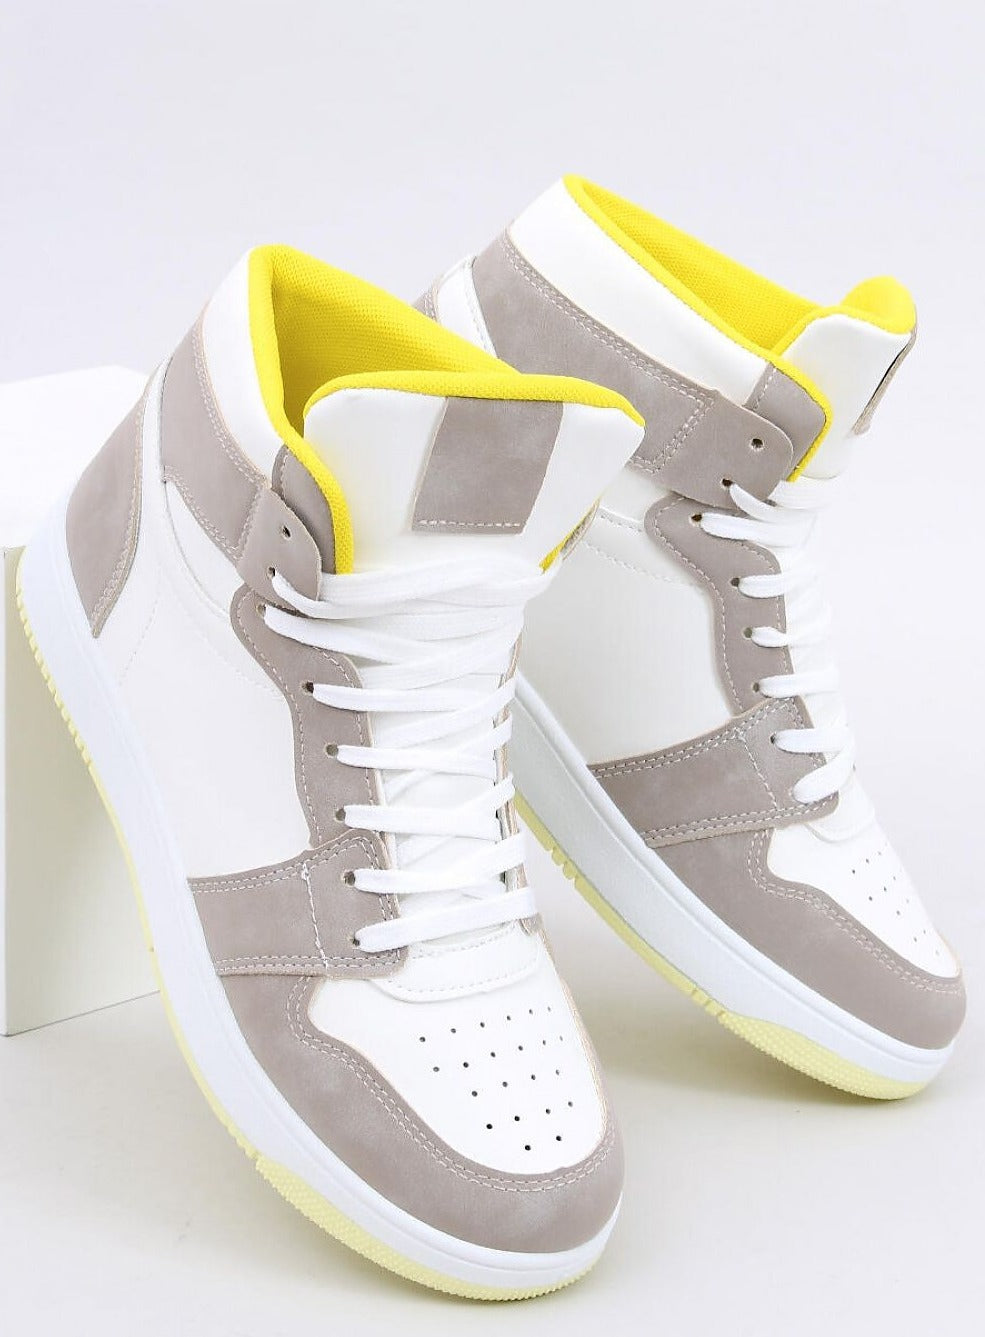 TEEK - White Stone Yellow Womens High-Top Sneakers SHOES TEEK MH 6  